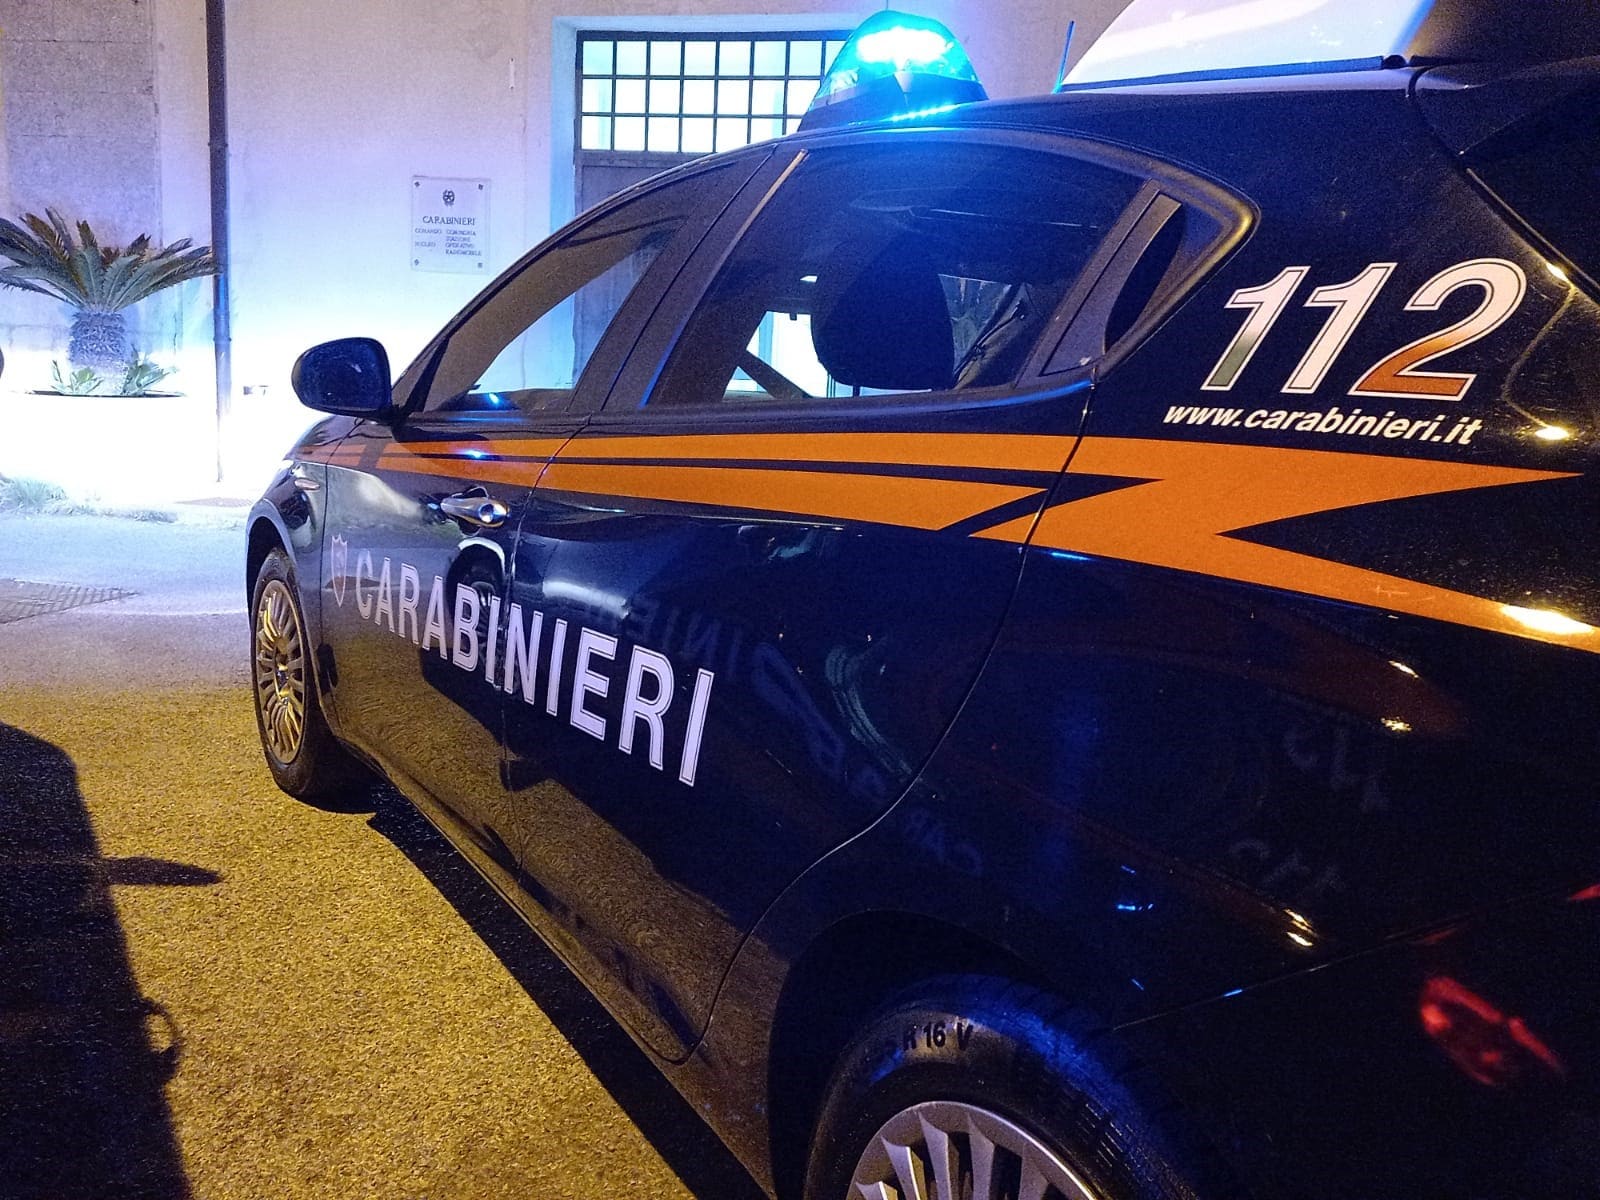 Da Catania a Messina per svaligiare i supermercati, arrestato con 500 euro di merce